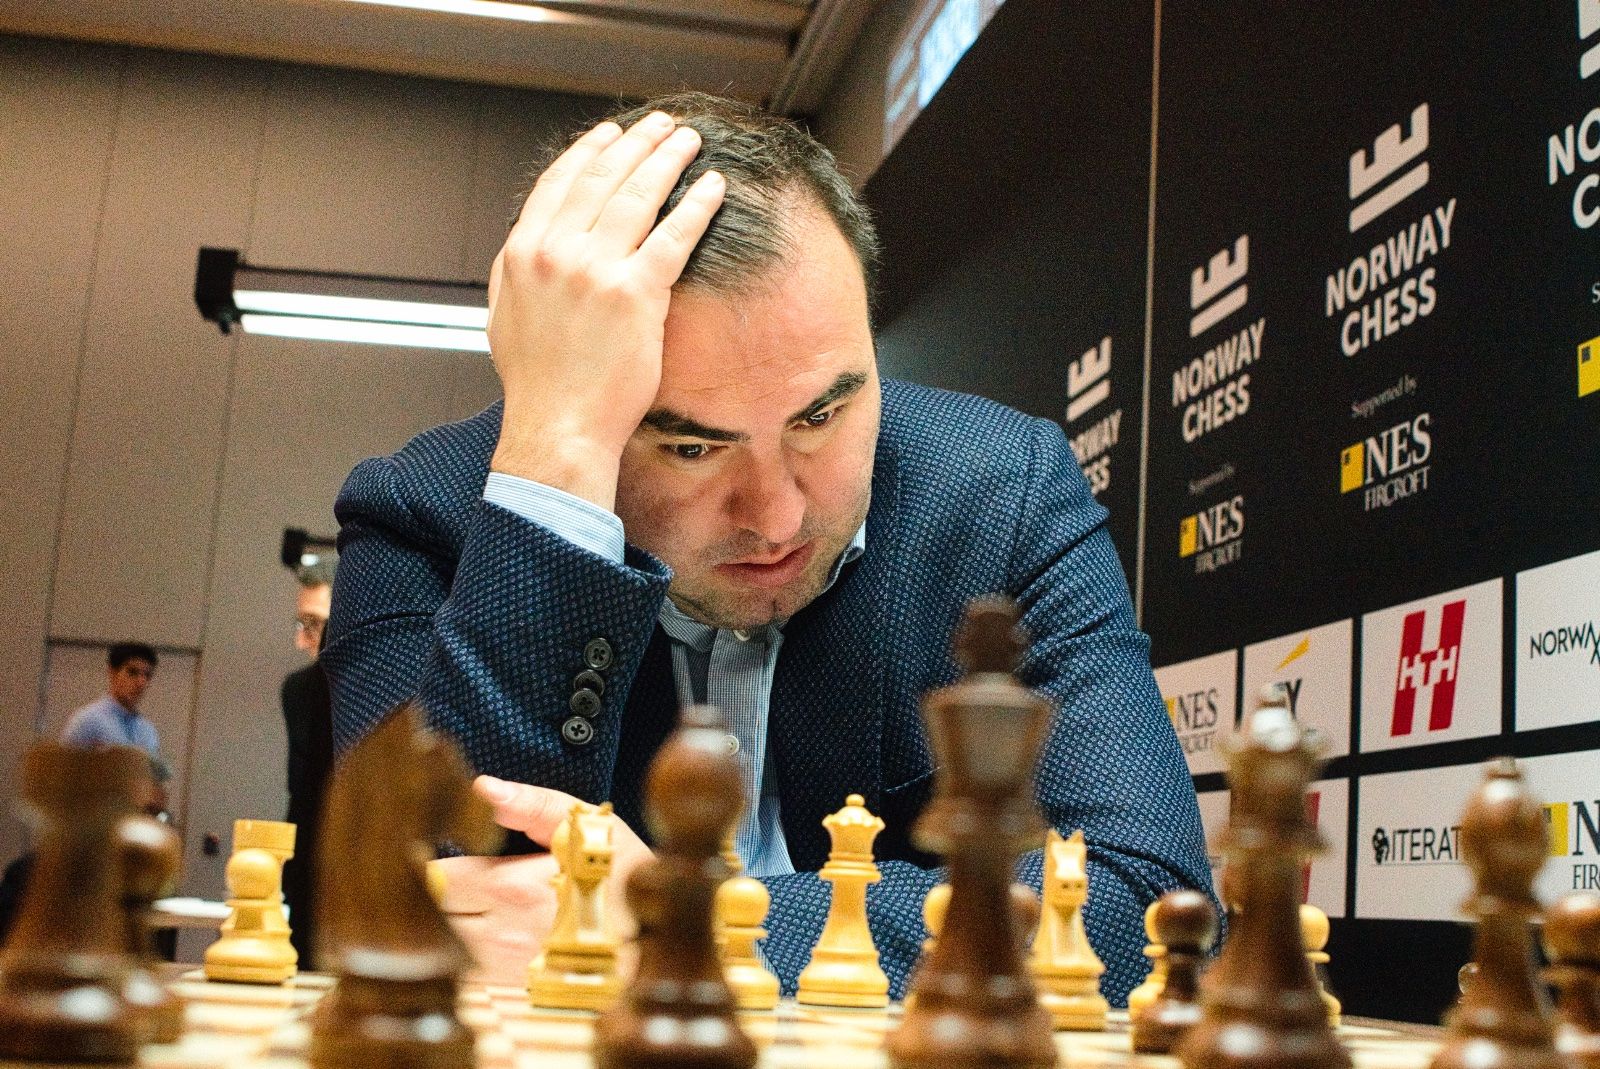 Norway Chess 1: Caruana e Firouzja lideram